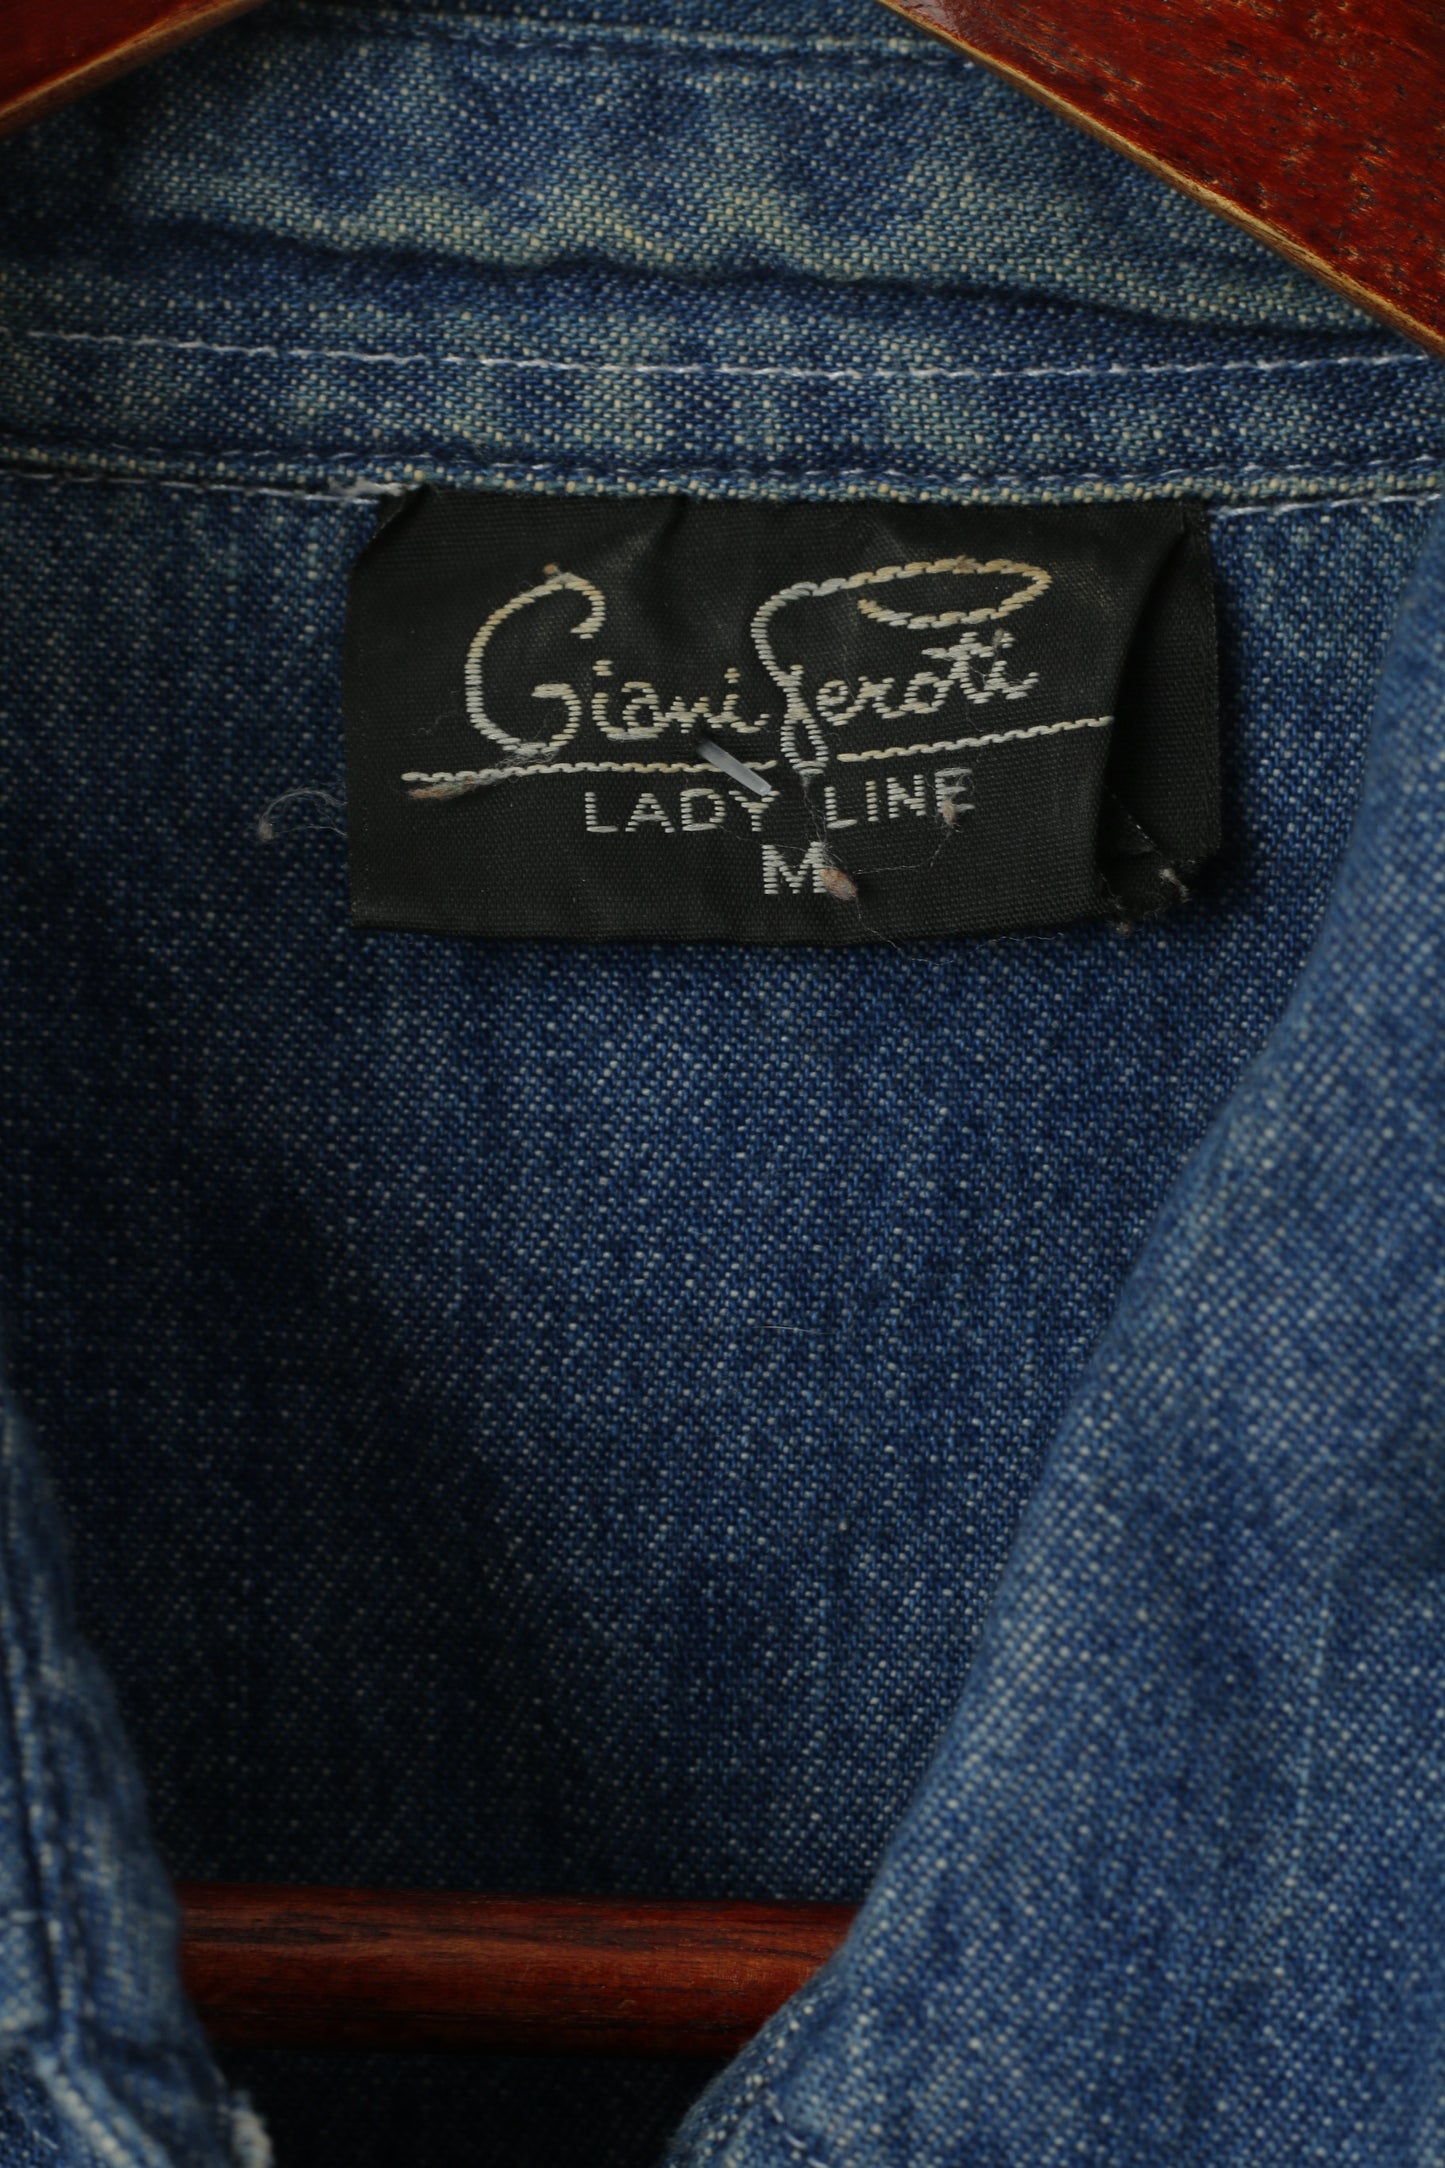 Giani Feroti Women M Casual Shirt Blue Denim Cotton Long Sleeve Lady Line Top